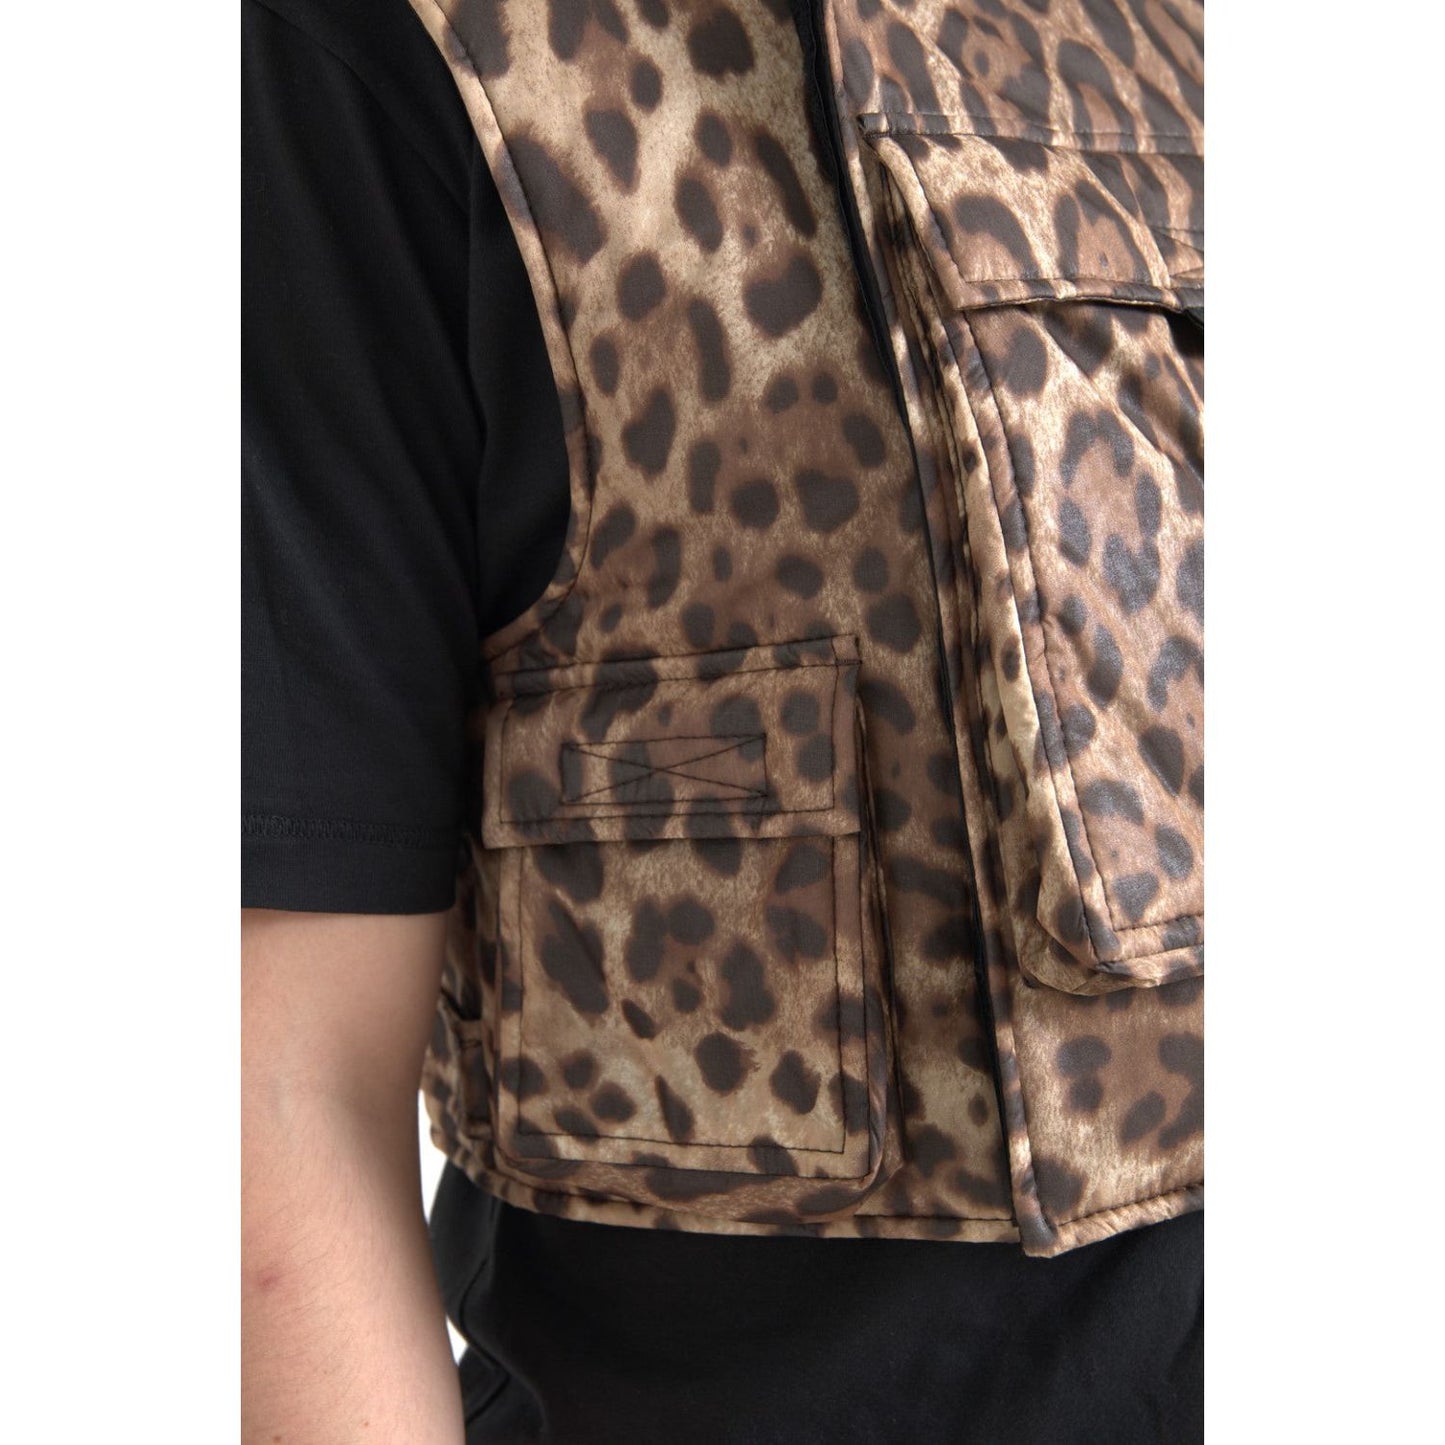 Dolce & Gabbana Silk Leopard Vest Exclusive Sportswear brown-leopard-silk-sleeveless-sportswear 465A7335-Large-d3682c4b-4c3.jpg